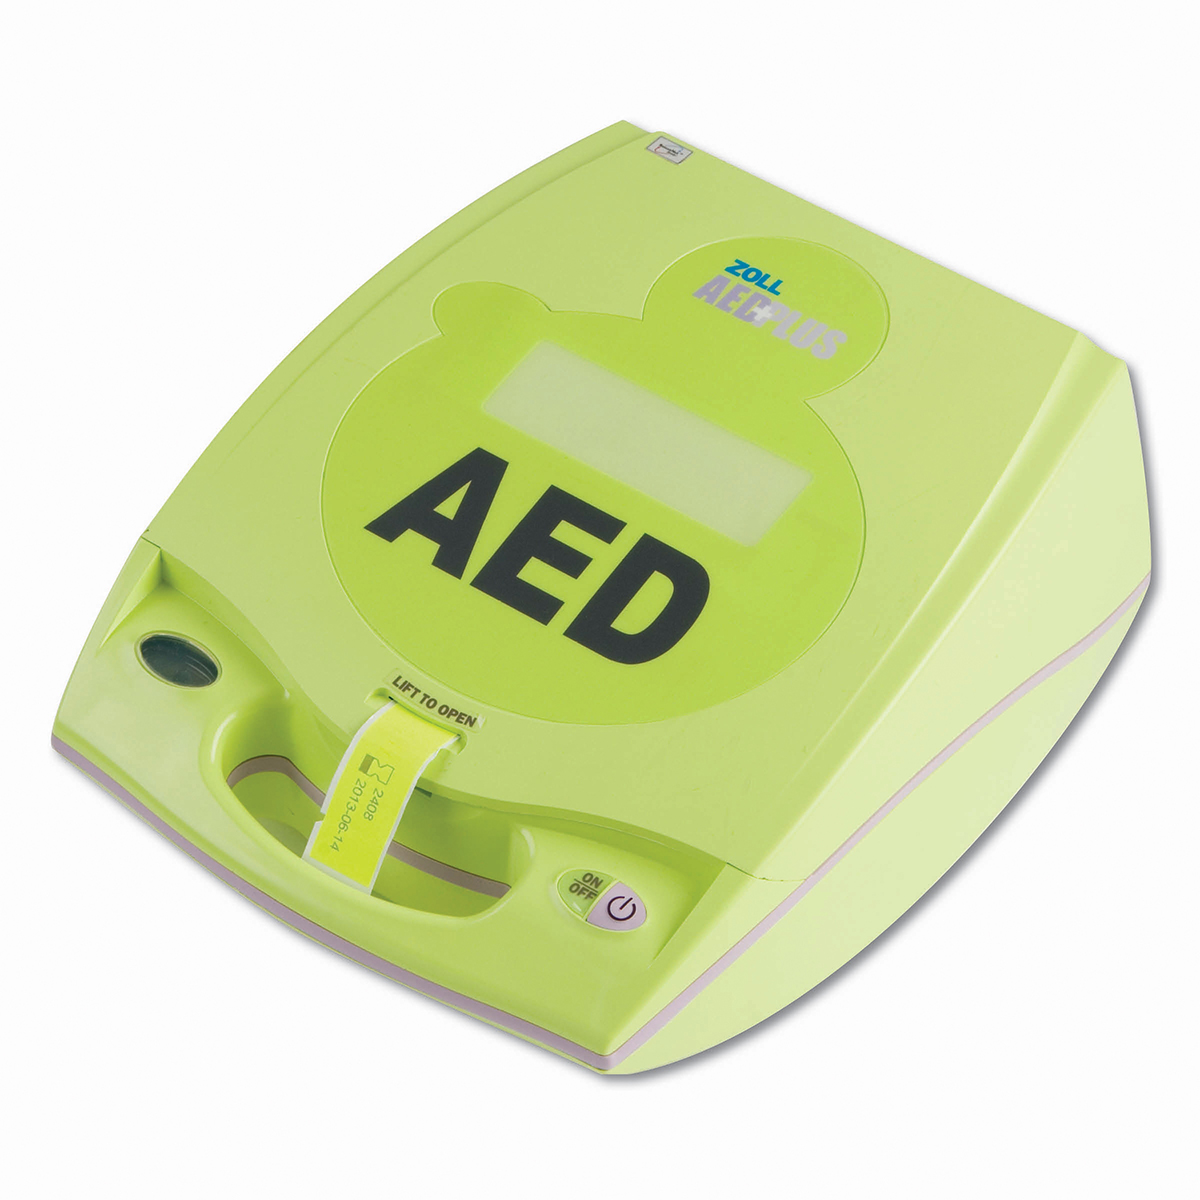 Zoll® AED Plus Semi-Automatic Defibrillator